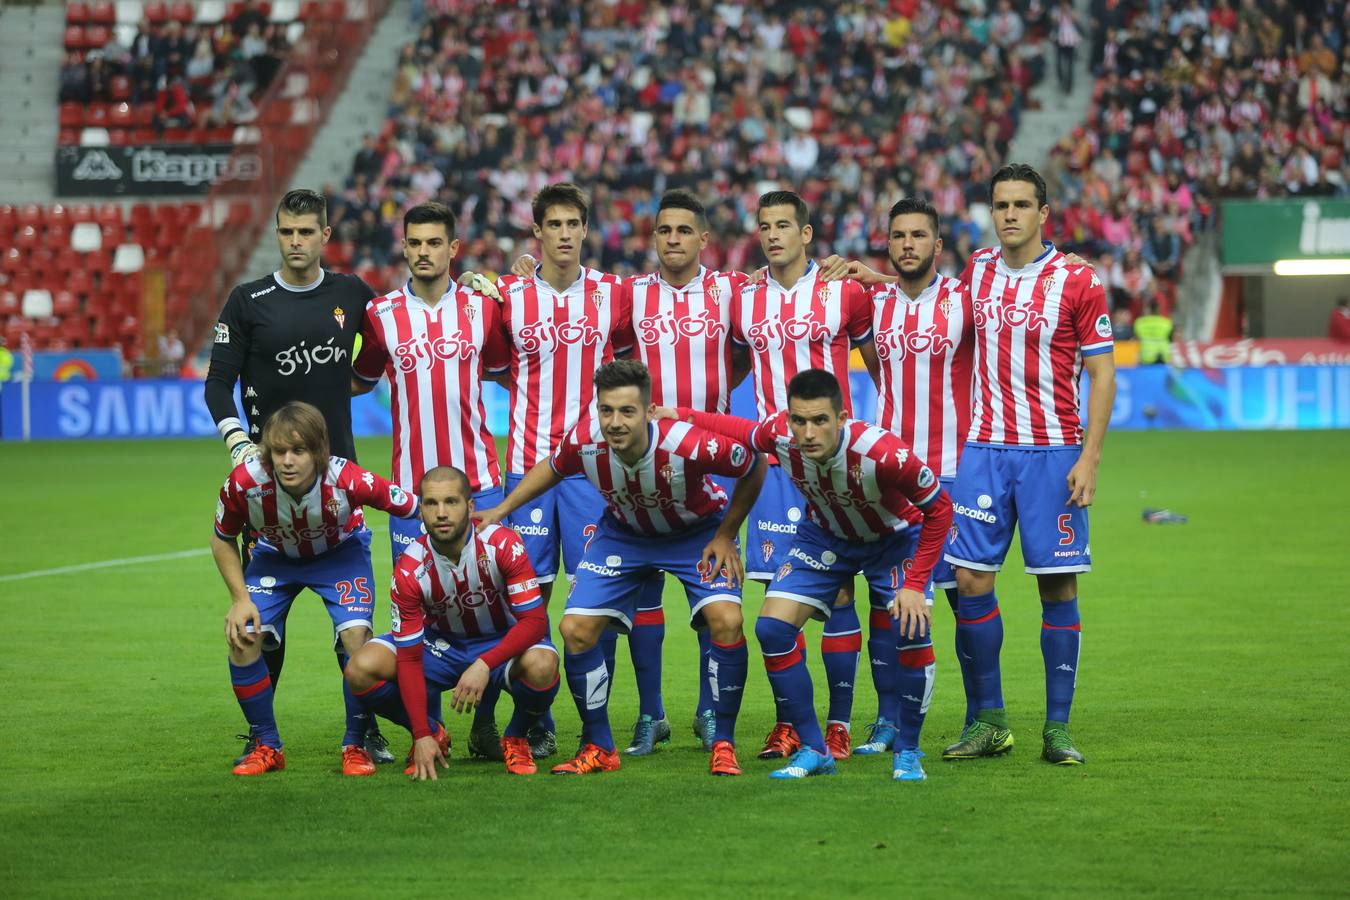 Sporting 1-0 Málaga (I)